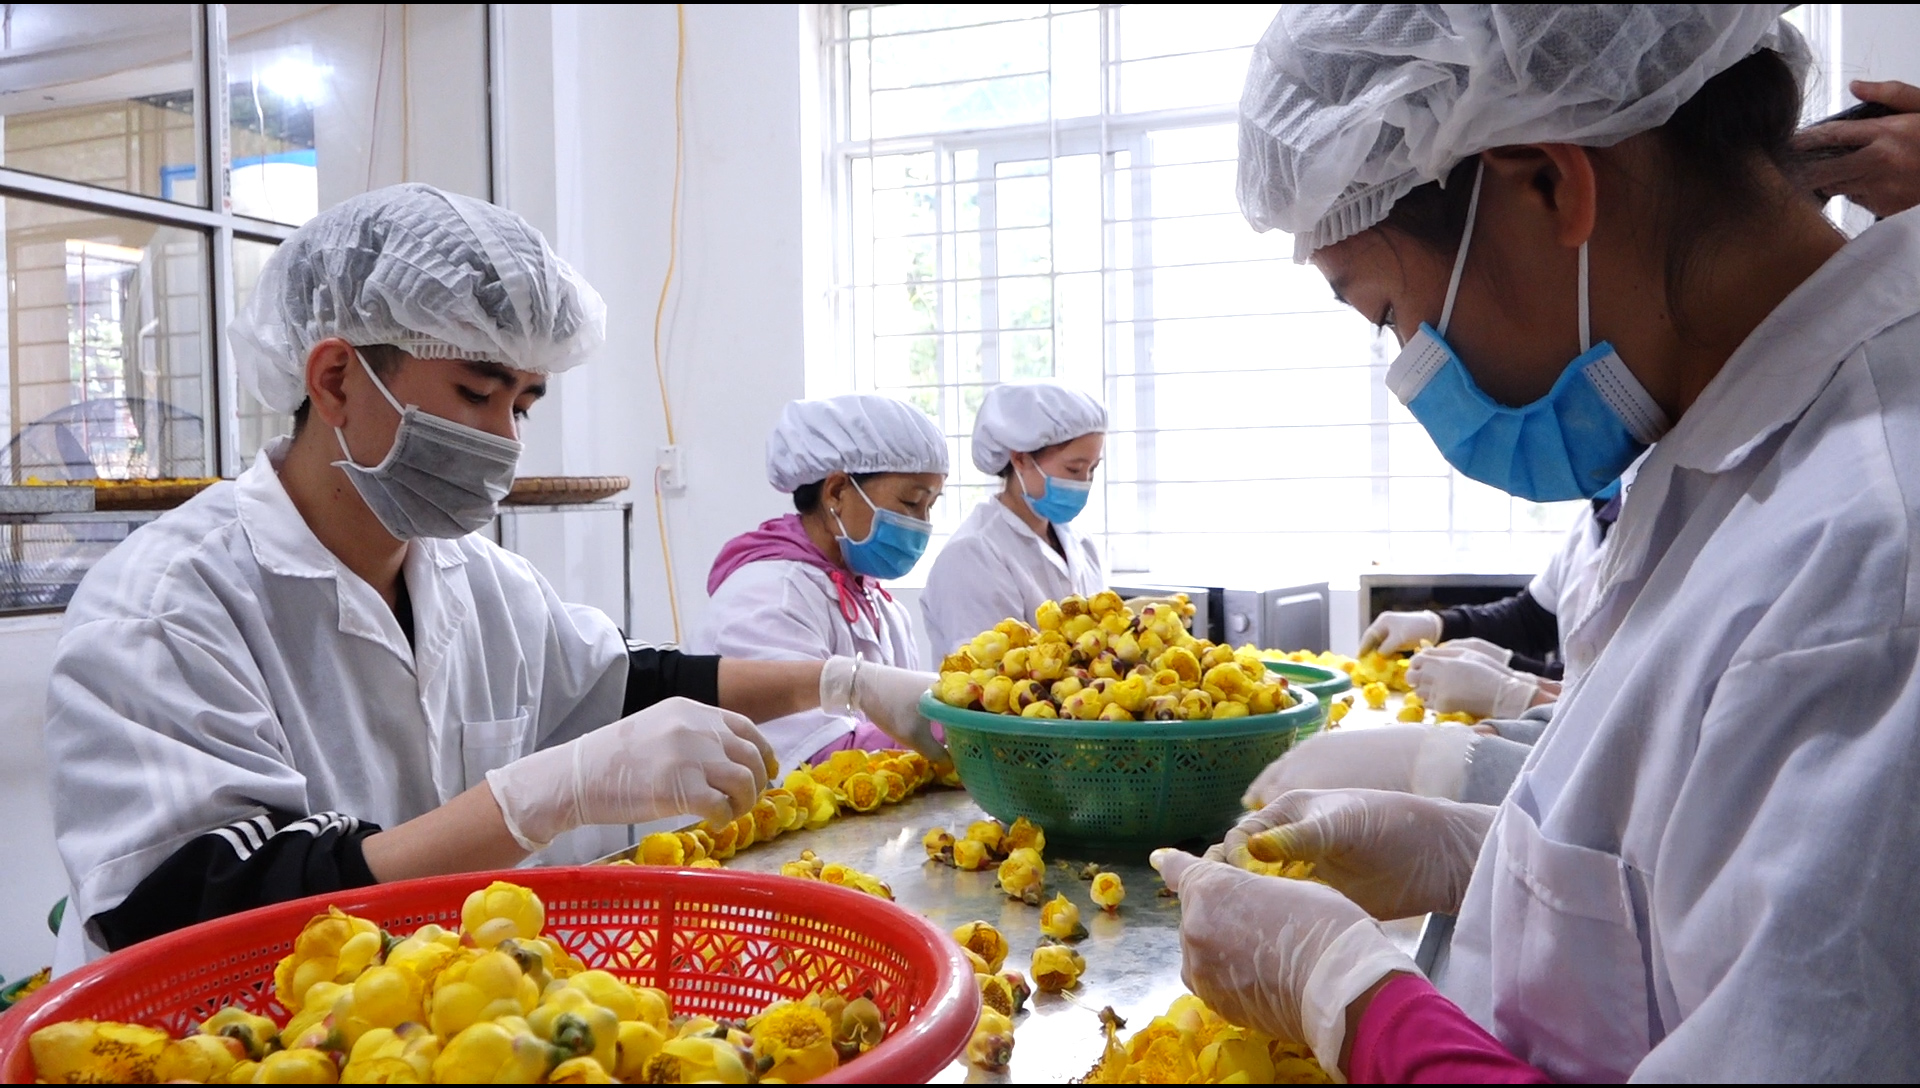 Chế biến sản phẩm OCOP trà hoa vàng tại cơ sở sản xuất của anh Nịnh Văn Trắng, huyện Ba Chẽ theo công nghệ sấy lạnh giúp nâng giá trị thành phẩm.